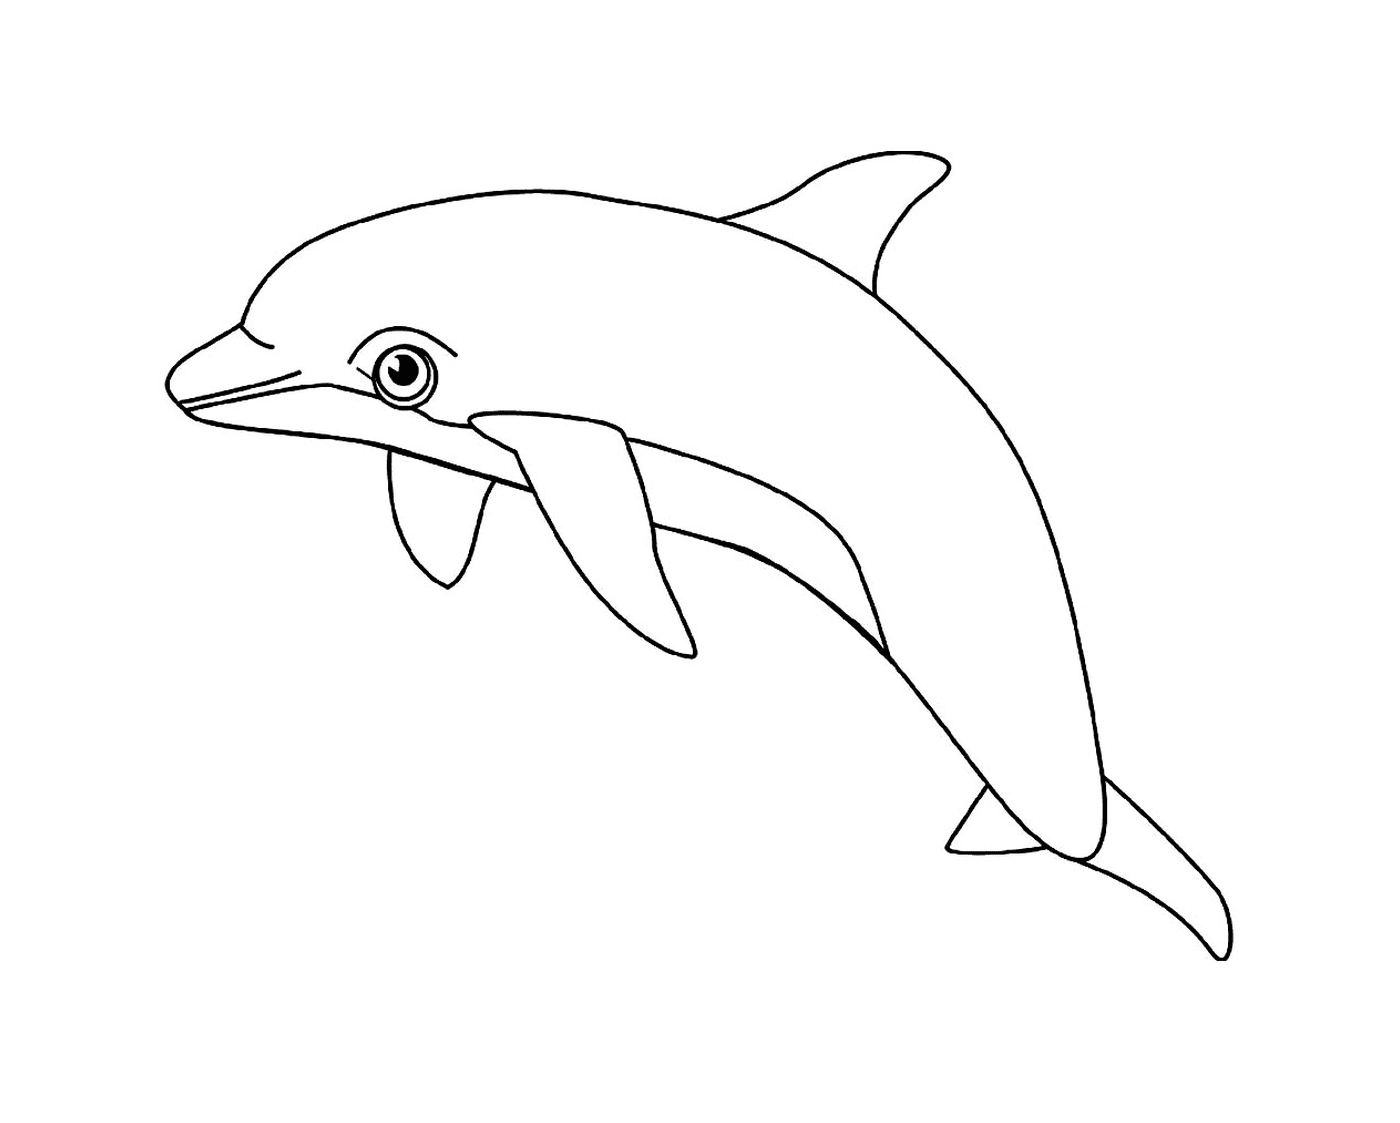   Un animal aquatique : le dauphin 